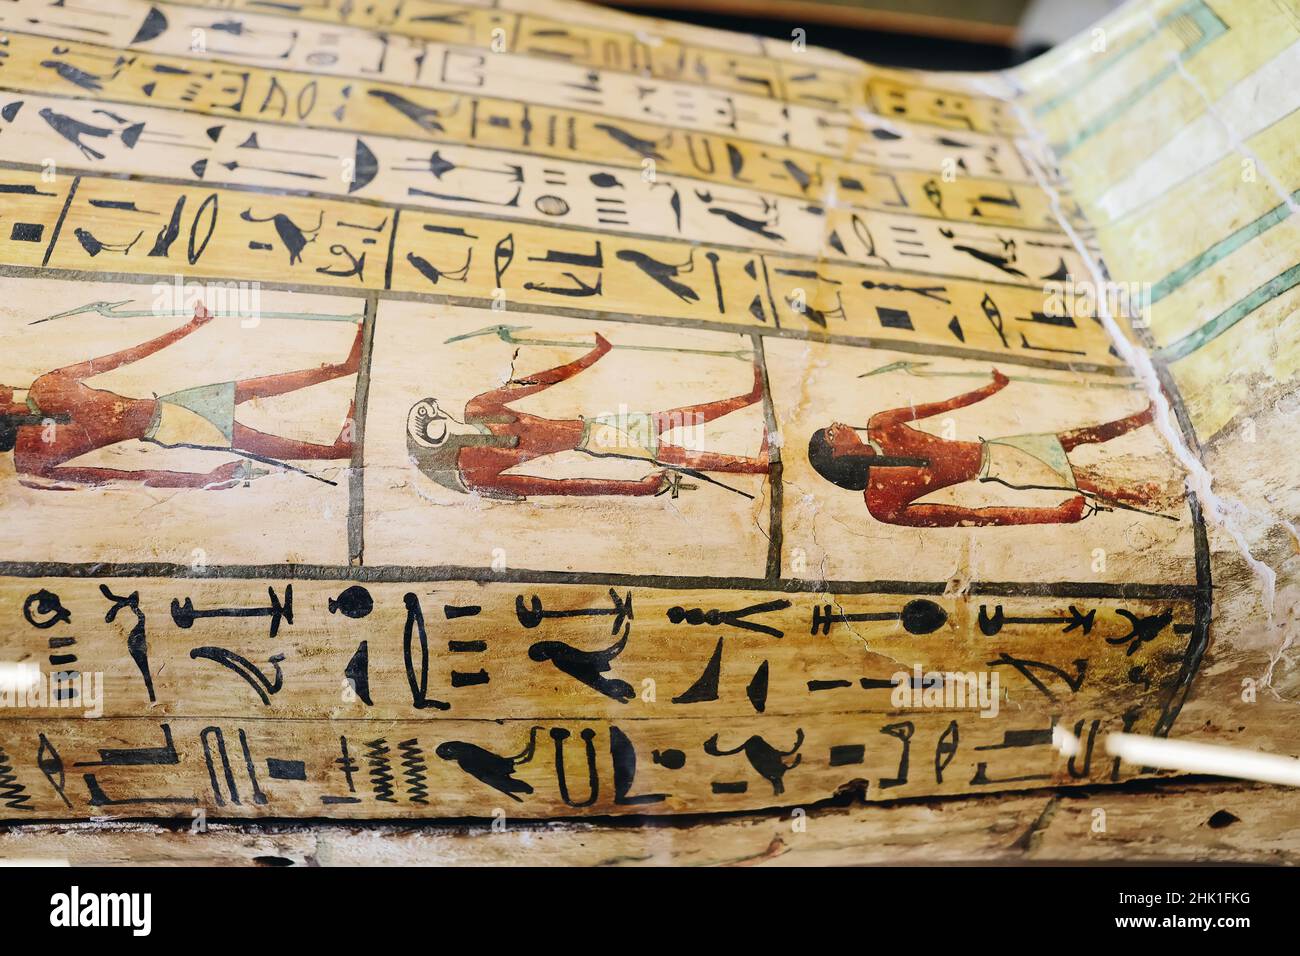 Dubai, VAE - 01.05.2022: Ägyptische Hieroglyphen geschrieben am Fragment des pharaonpriesters Psamtik Grabmäulchen Sarg am Ägyptischen Pavillon der Expo 2020 Welt exh Stockfoto